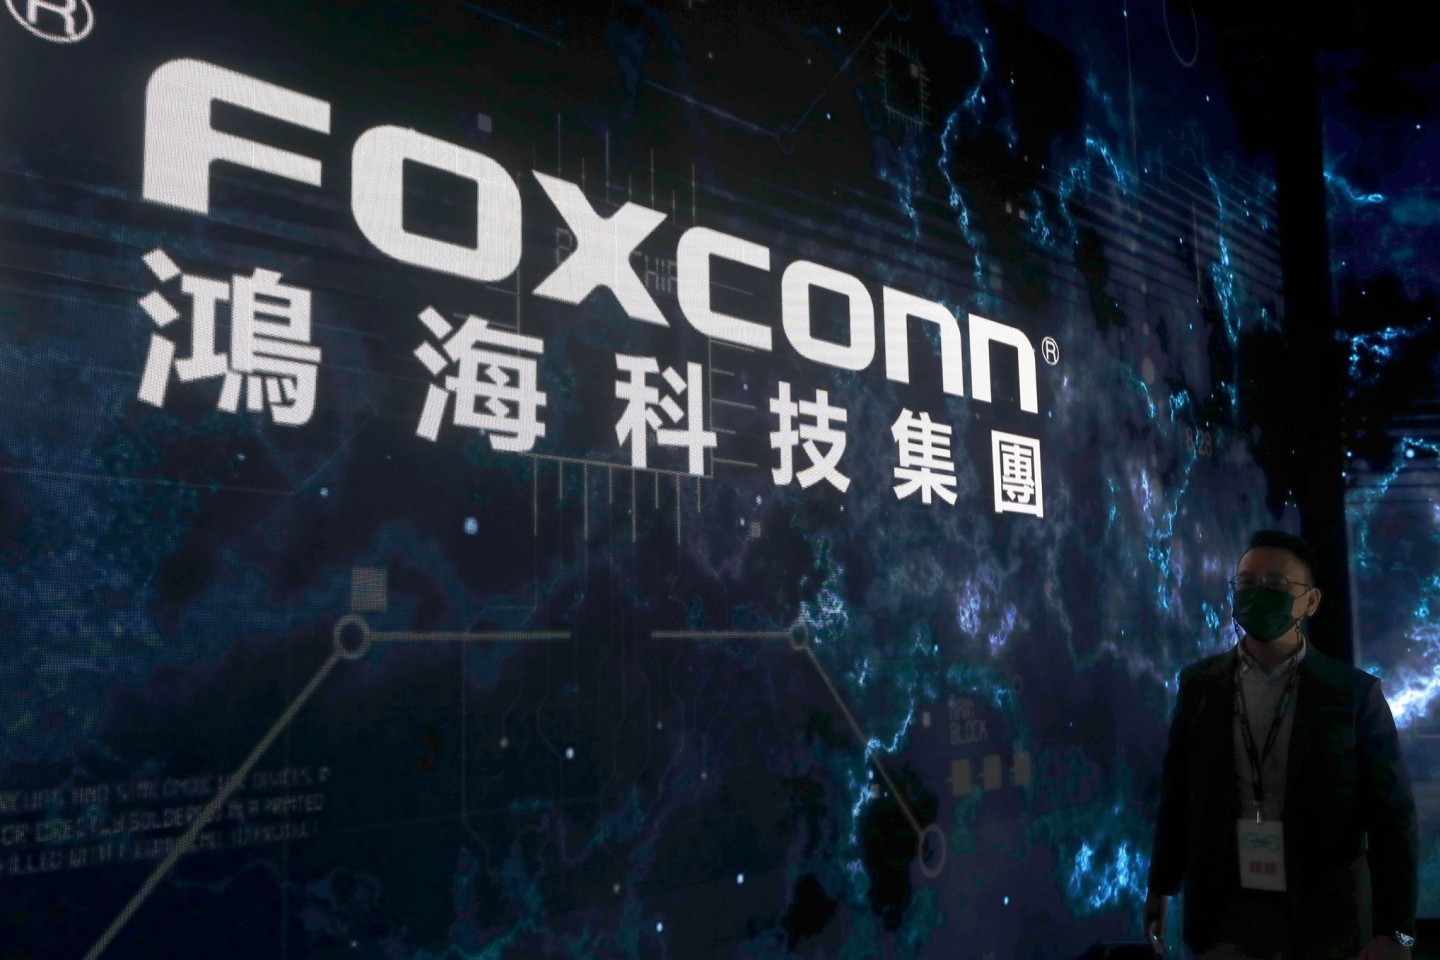 Rund um das Foxconn-Werk in Zhengzhou arbeiten rund 200.000 Menschen.